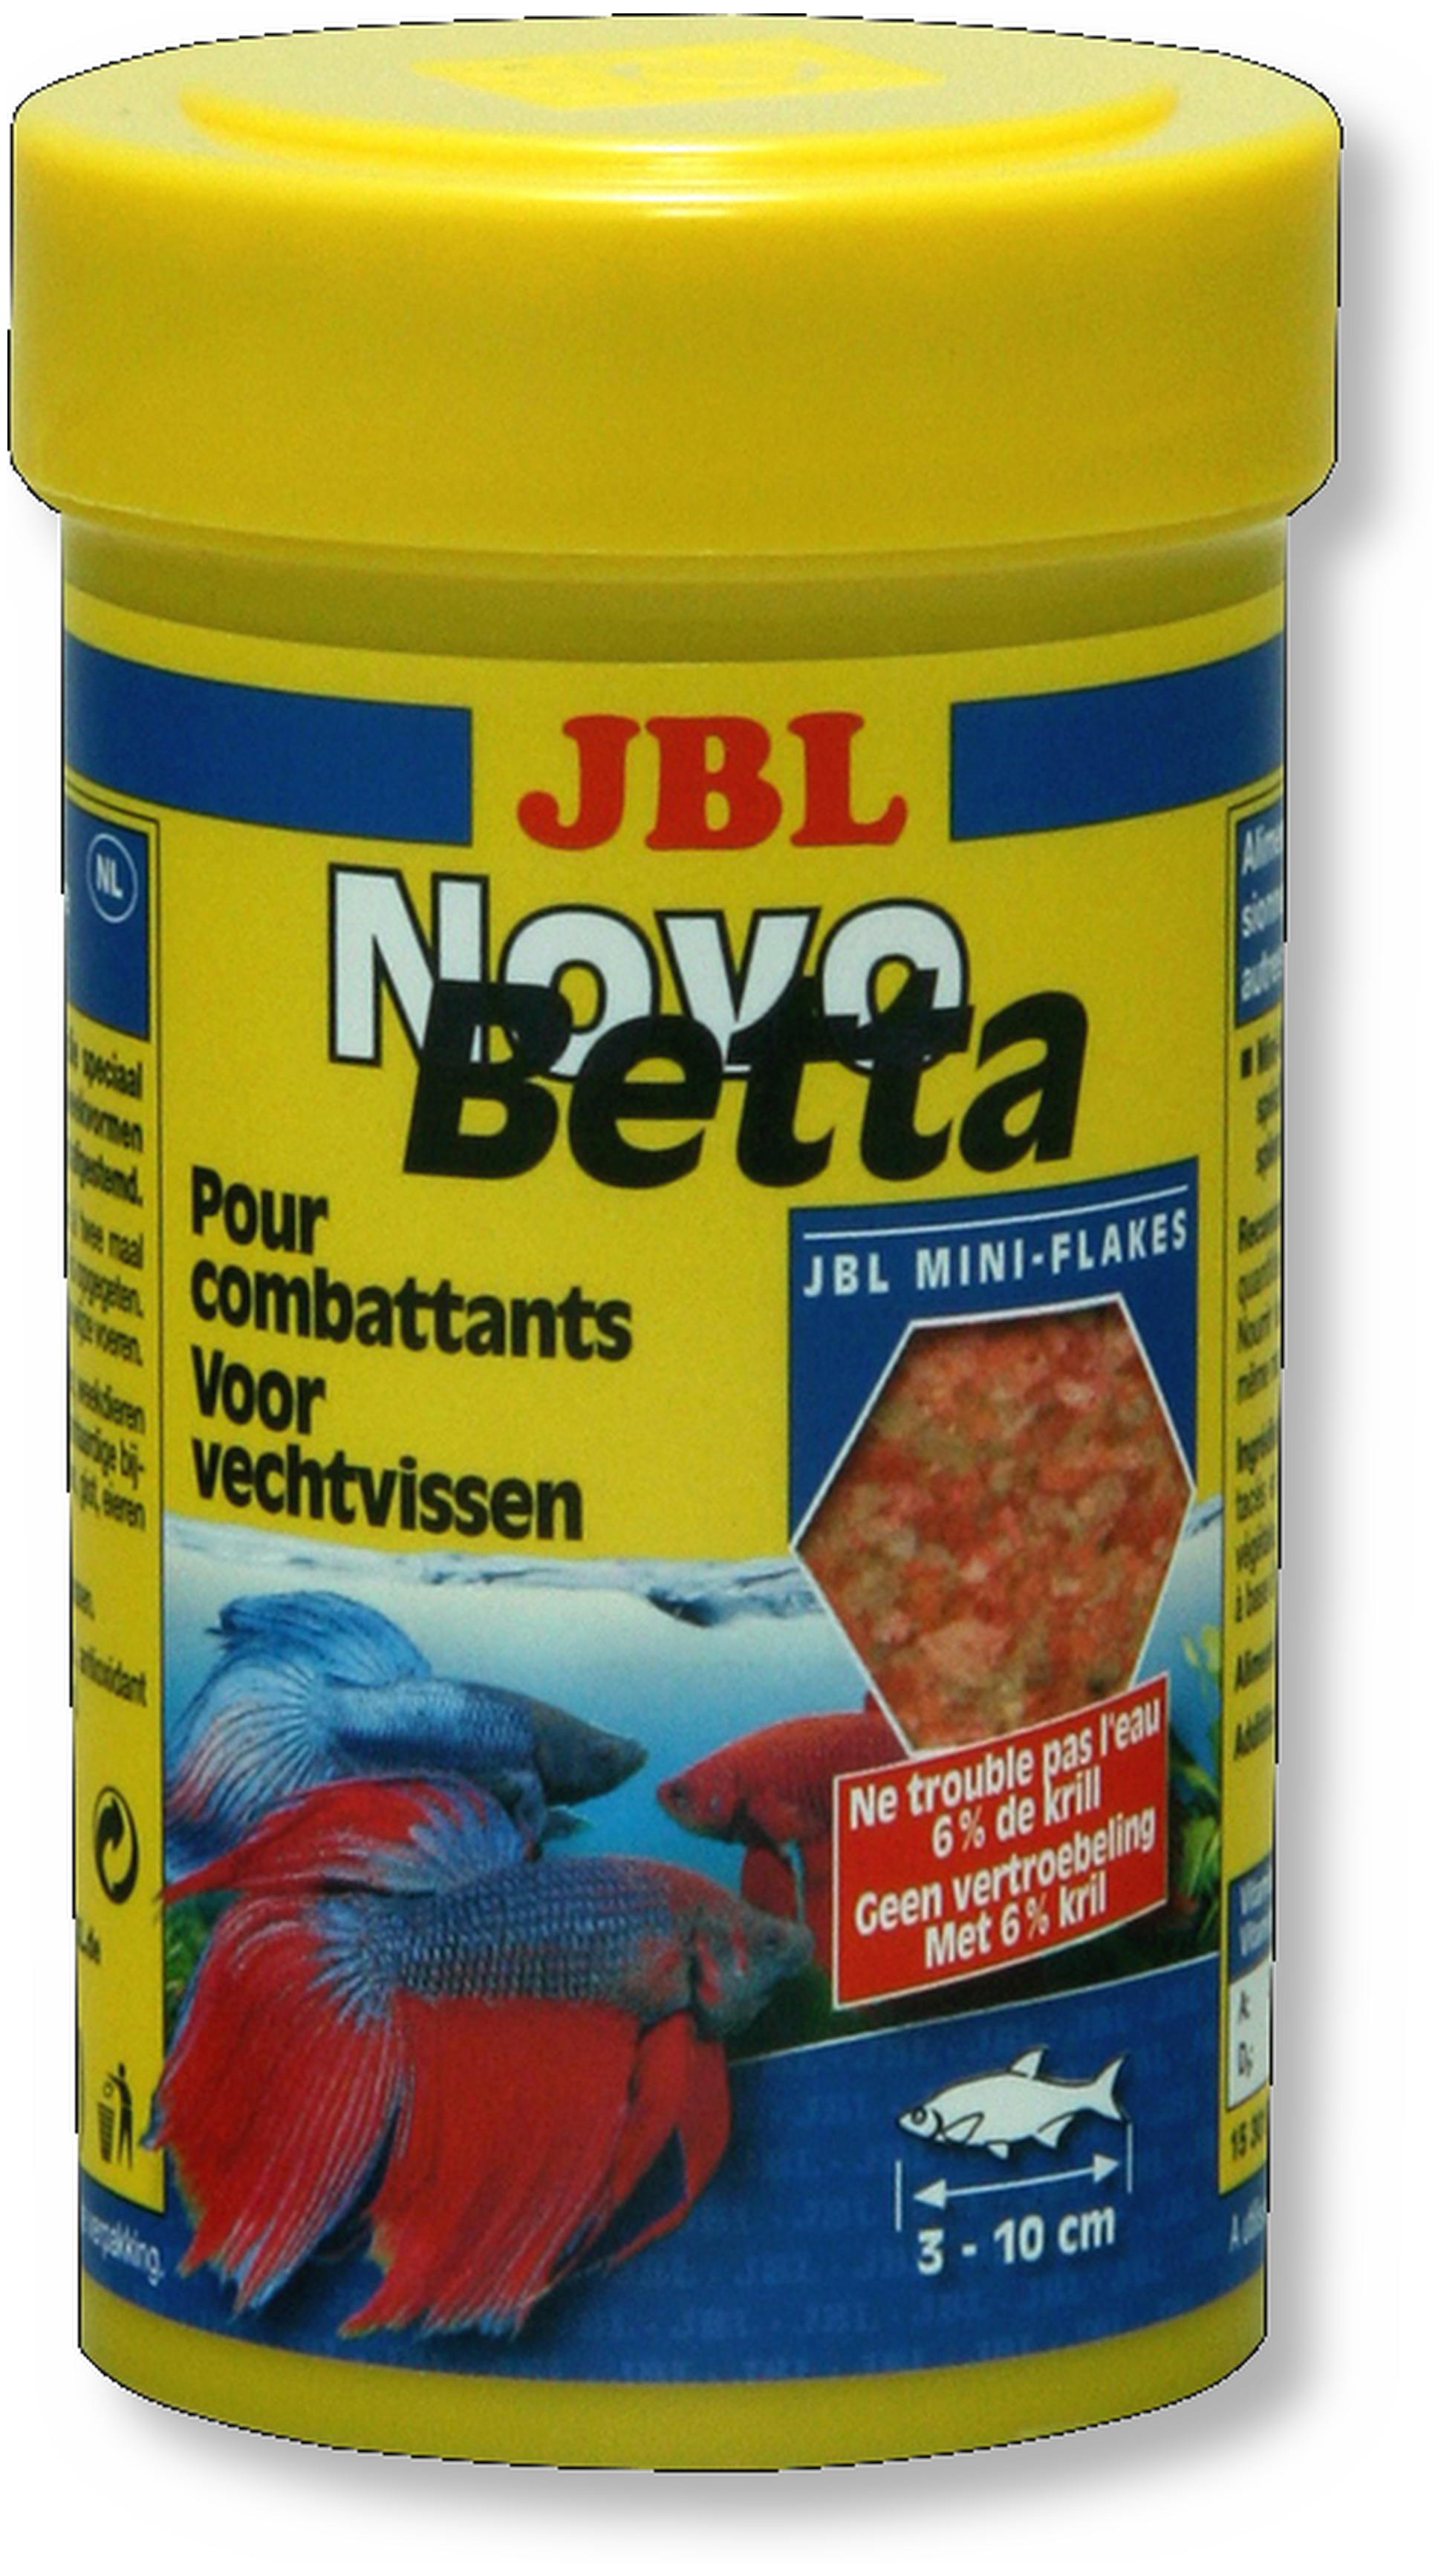 JBL NovoBetta